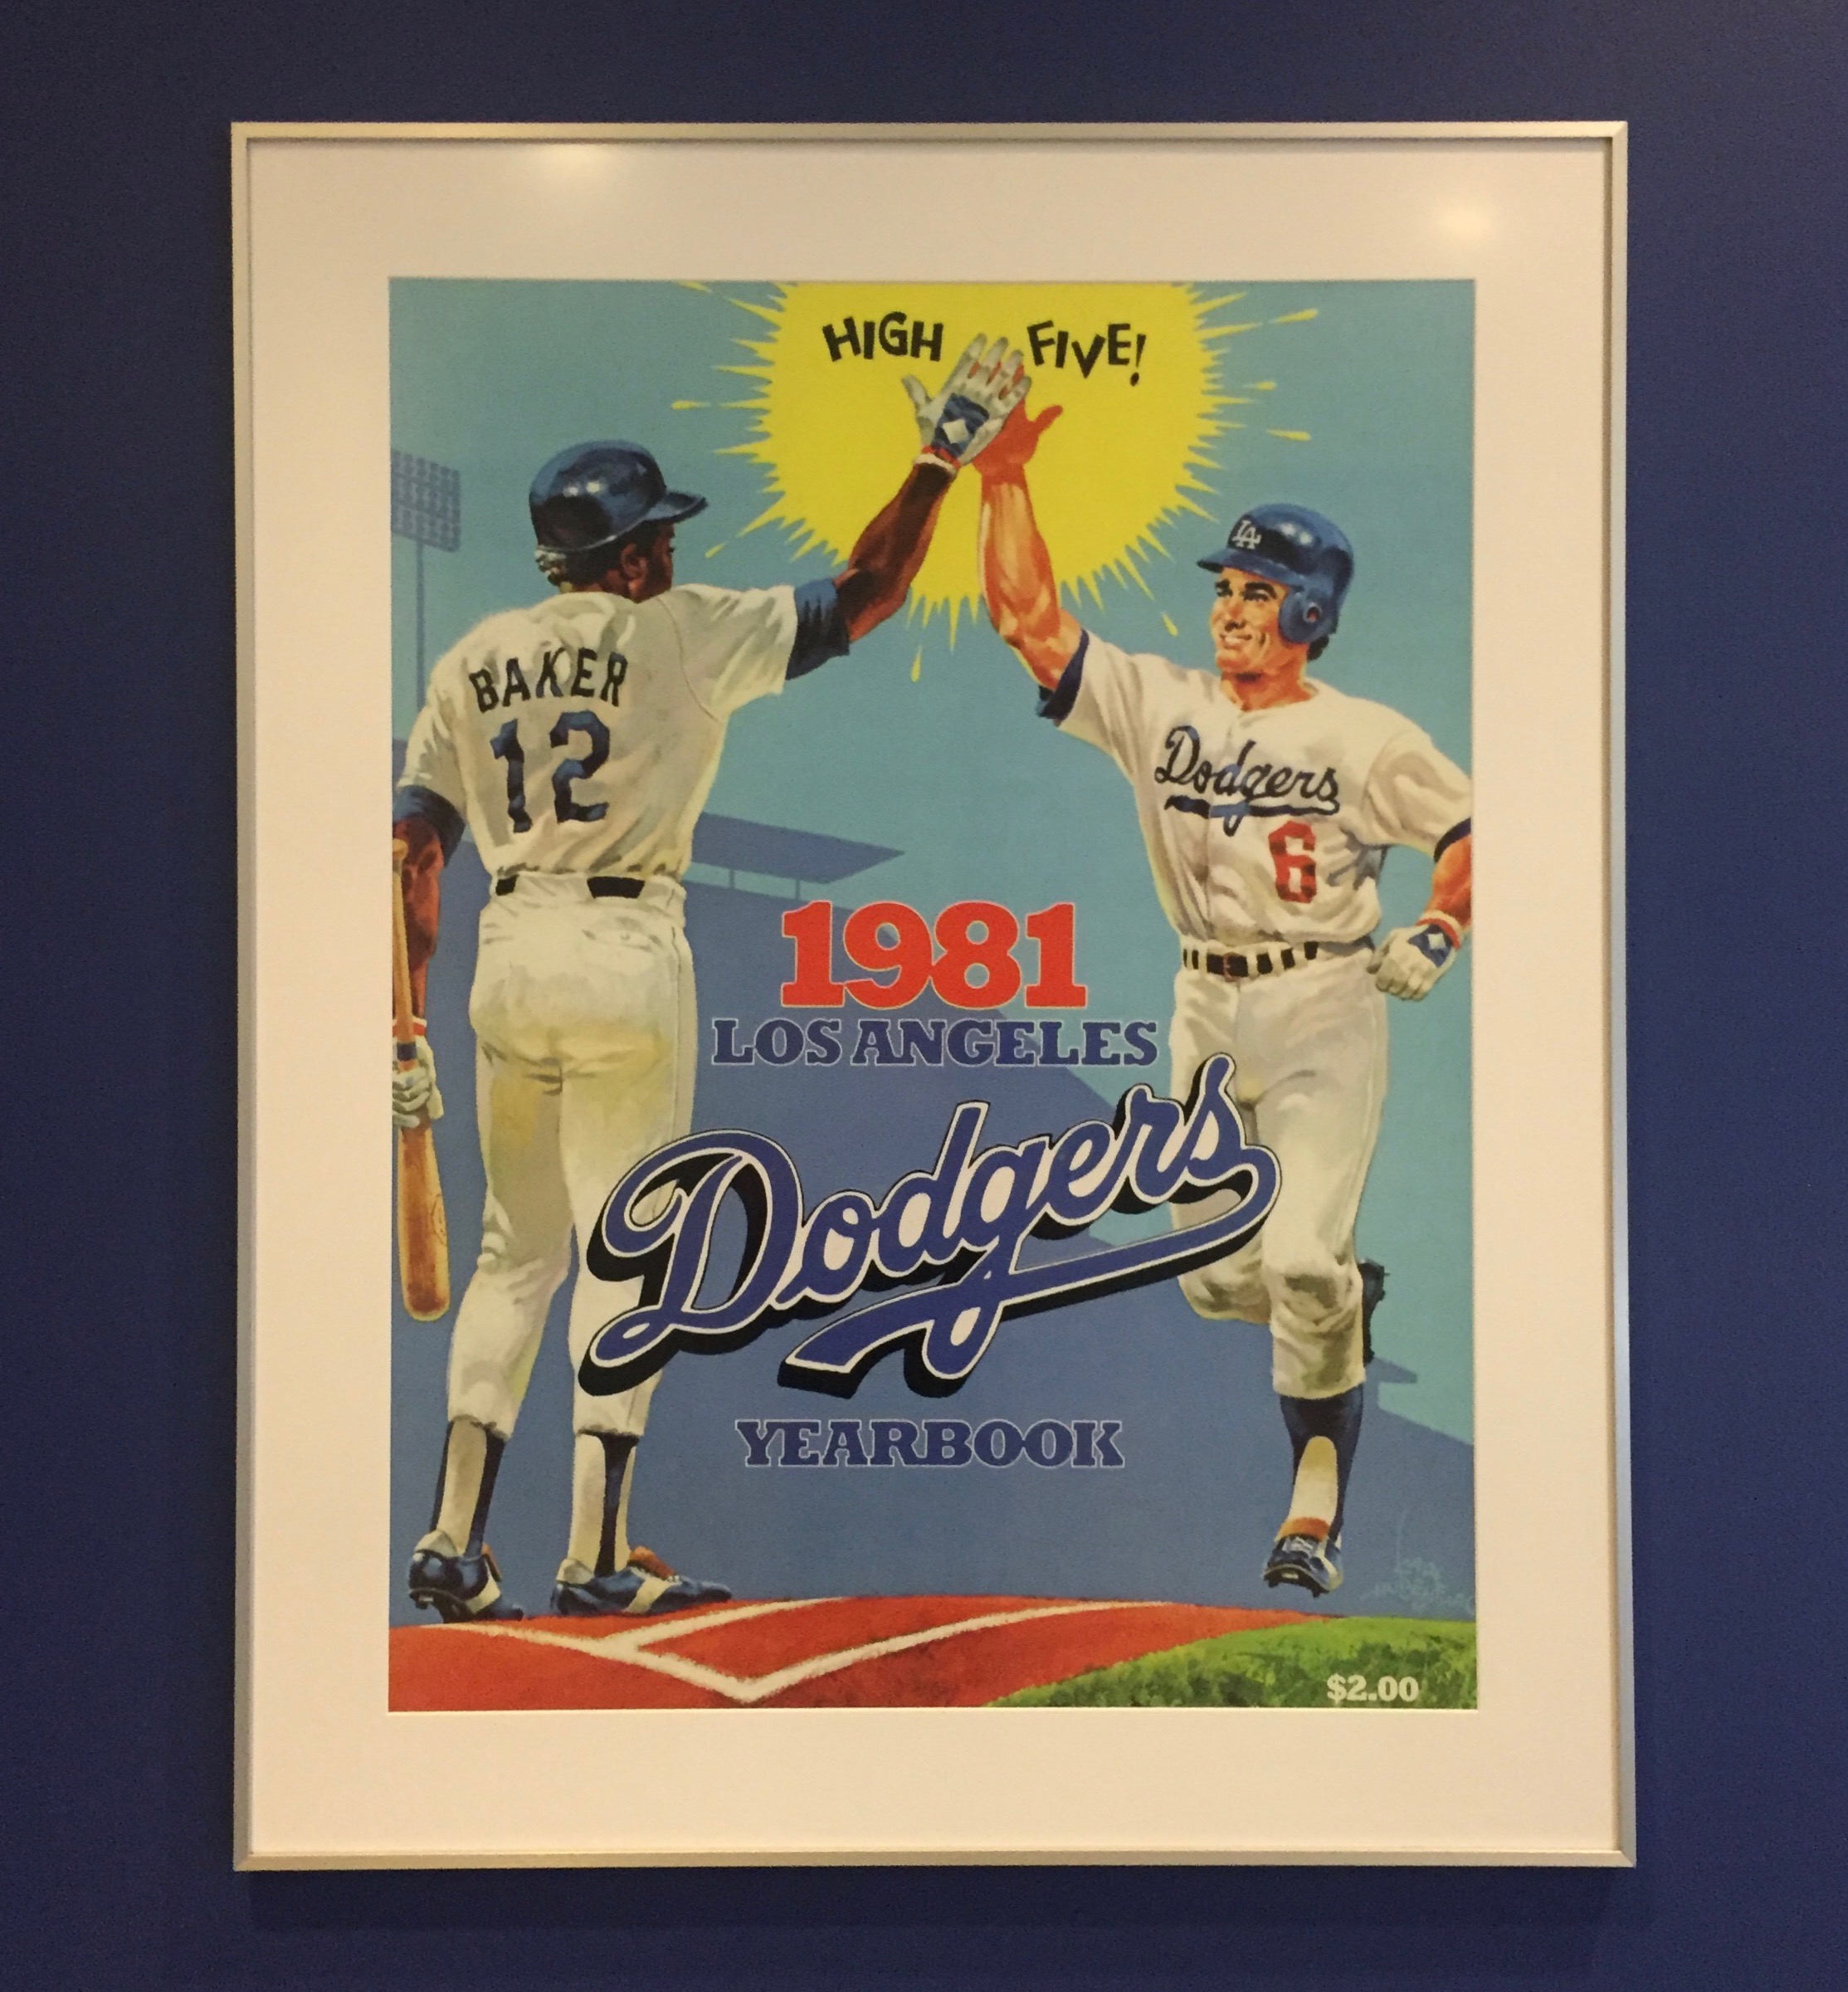 1981 Dodgers Yearbook